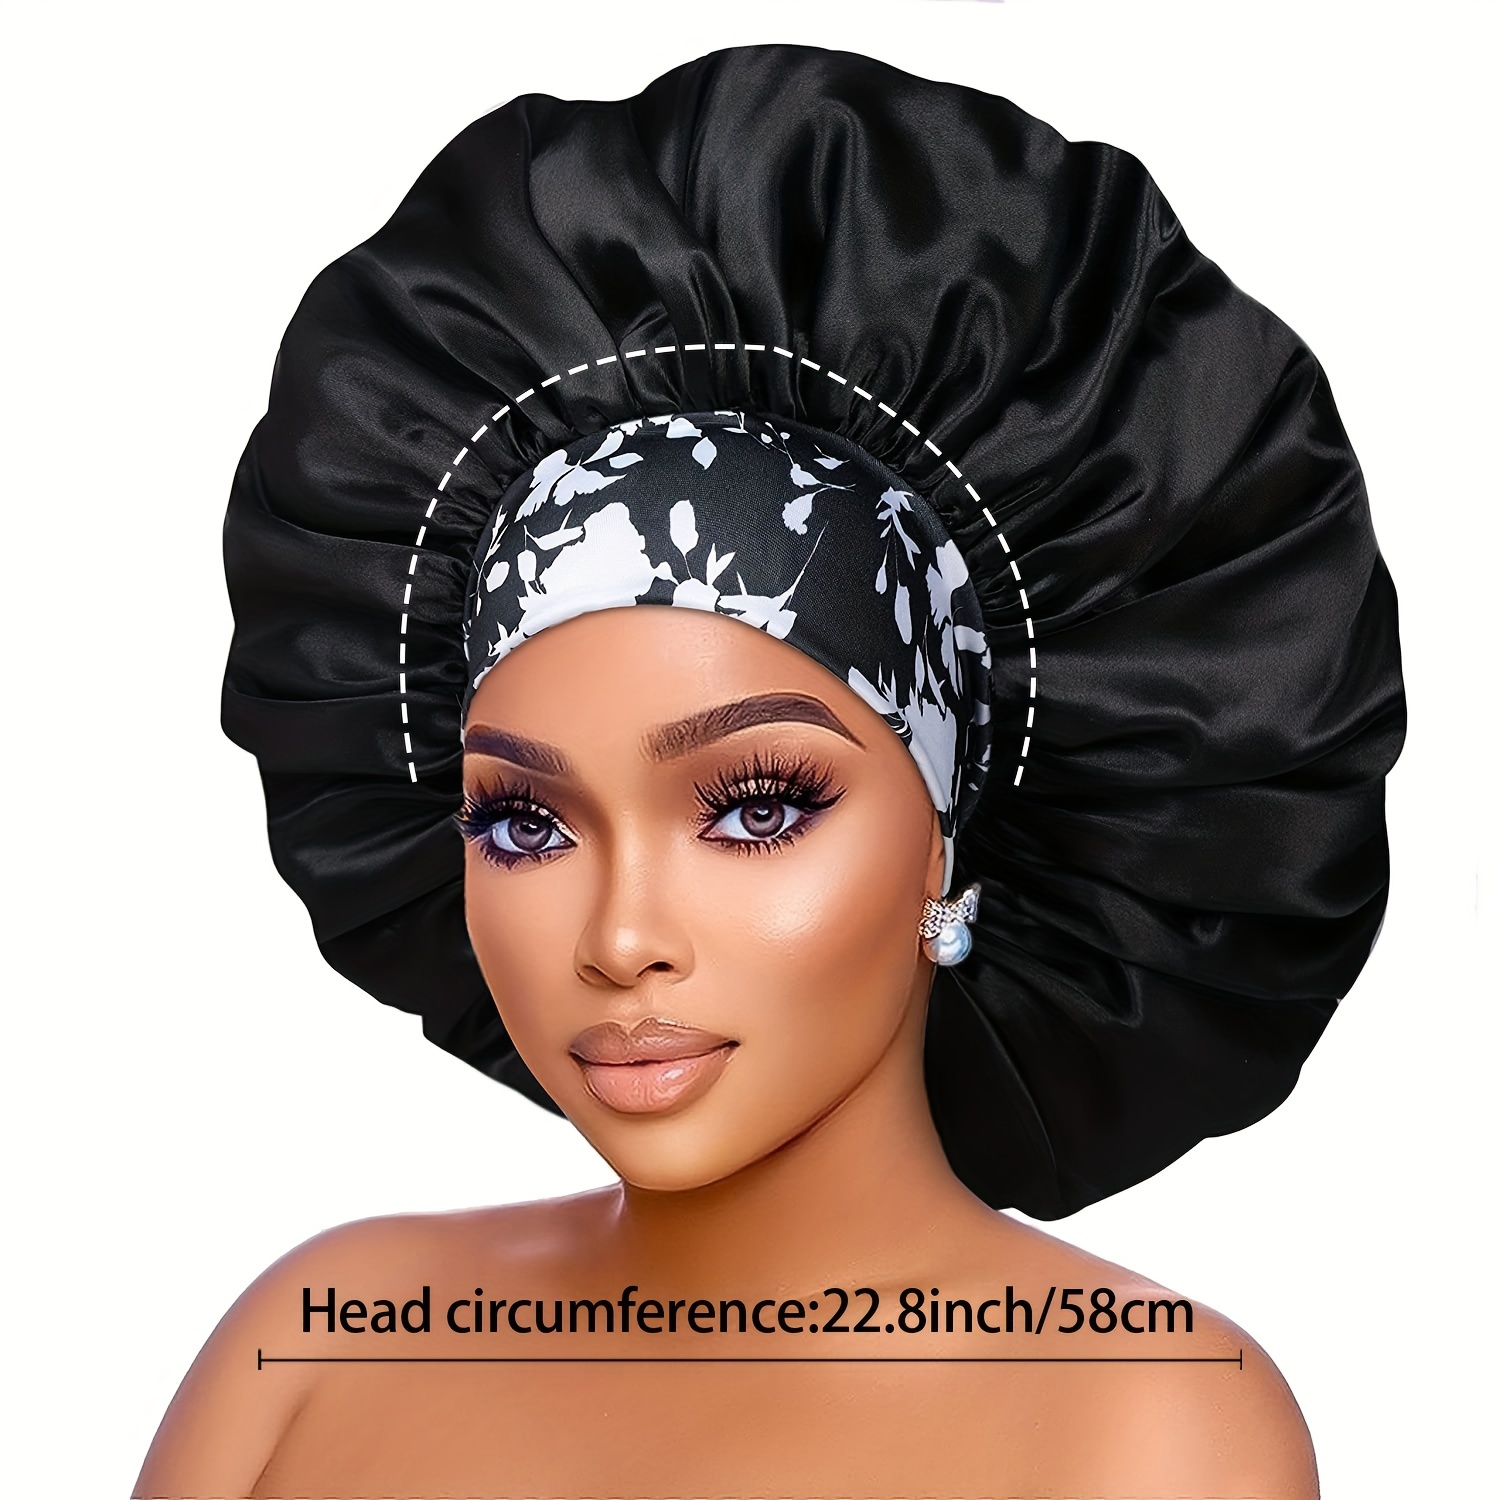 4 PCS Satin Bonnet for Sleeping,Hair Bonnets for Black Women,Hair